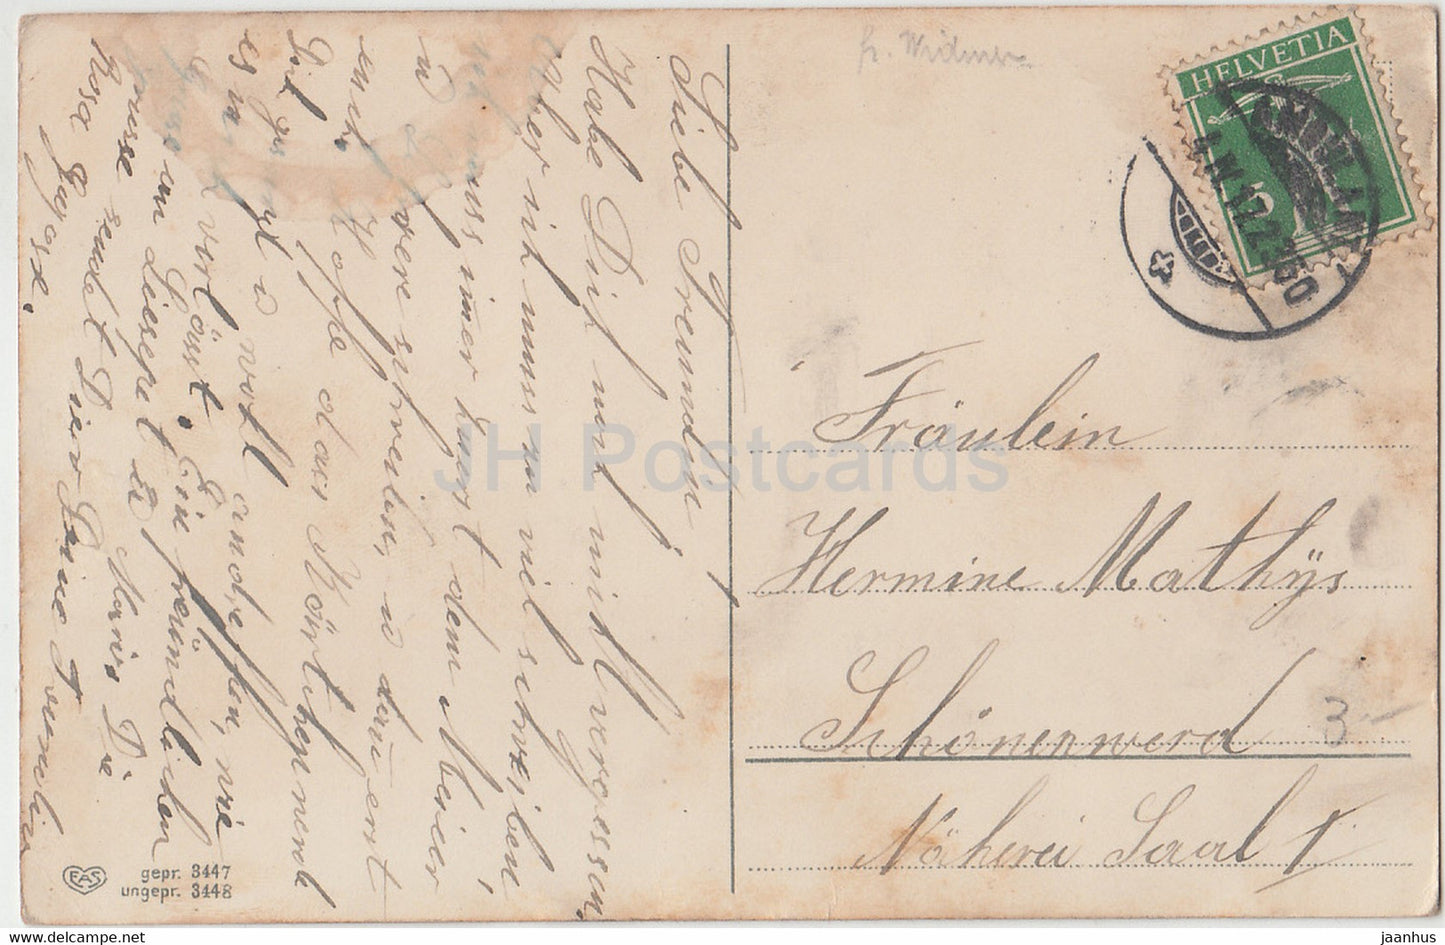 Ostergrußkarte - Herzinnigen Ostergruss - Huhn - EAS 3448 - alte Postkarte - 1917 - Deutschland - gebraucht